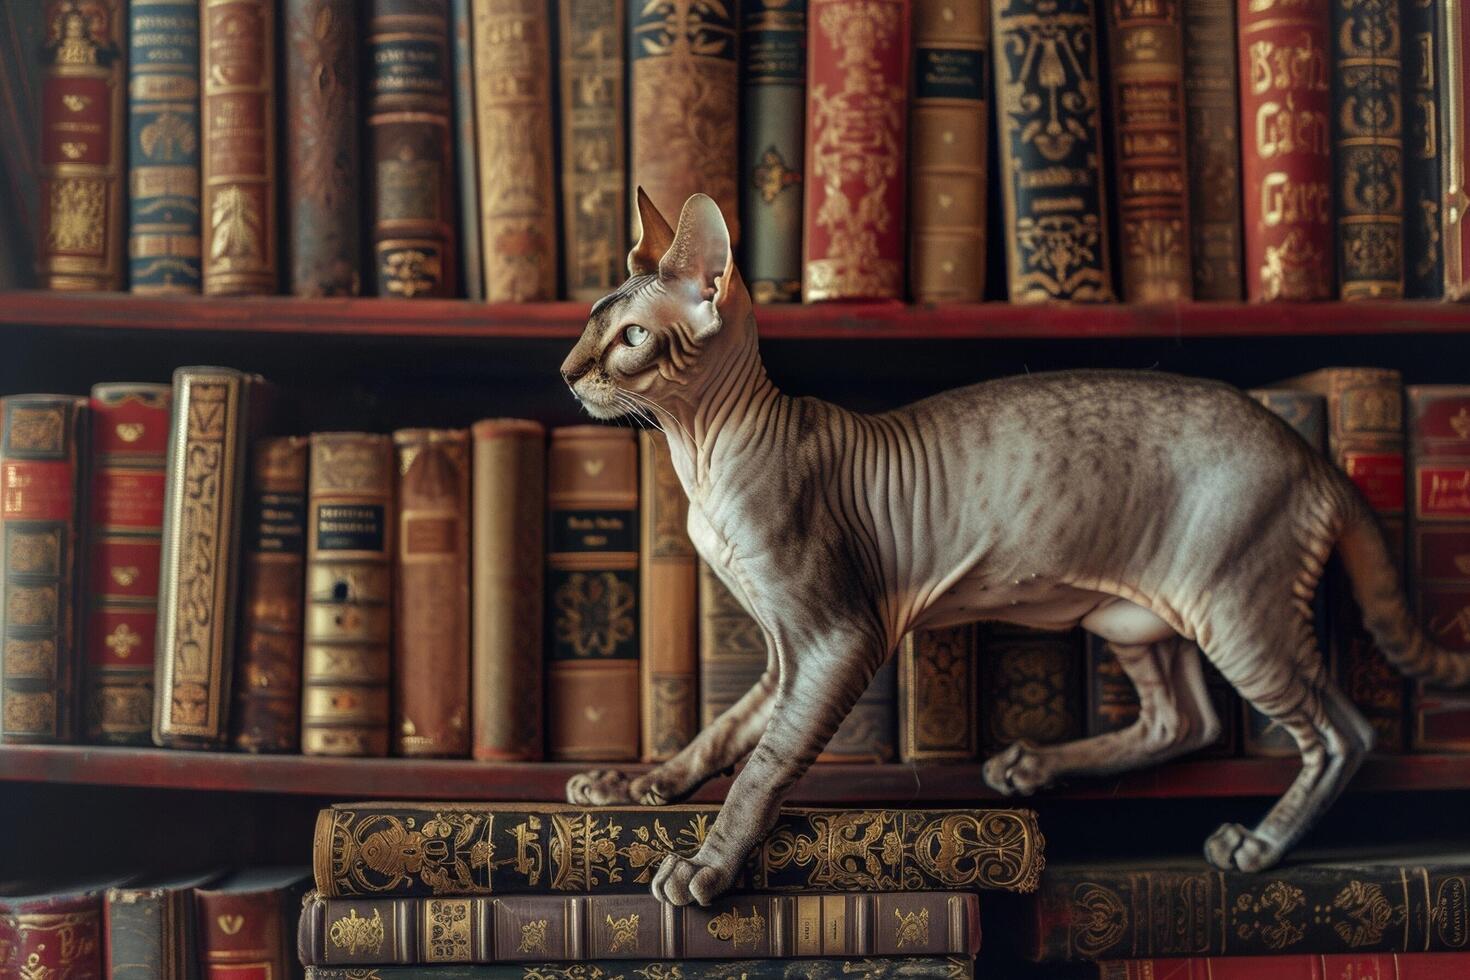 uma curioso cornish rex gato explorando uma confuso estante, Está delgado corpo tecelagem graciosamente entre a linhas do livros foto